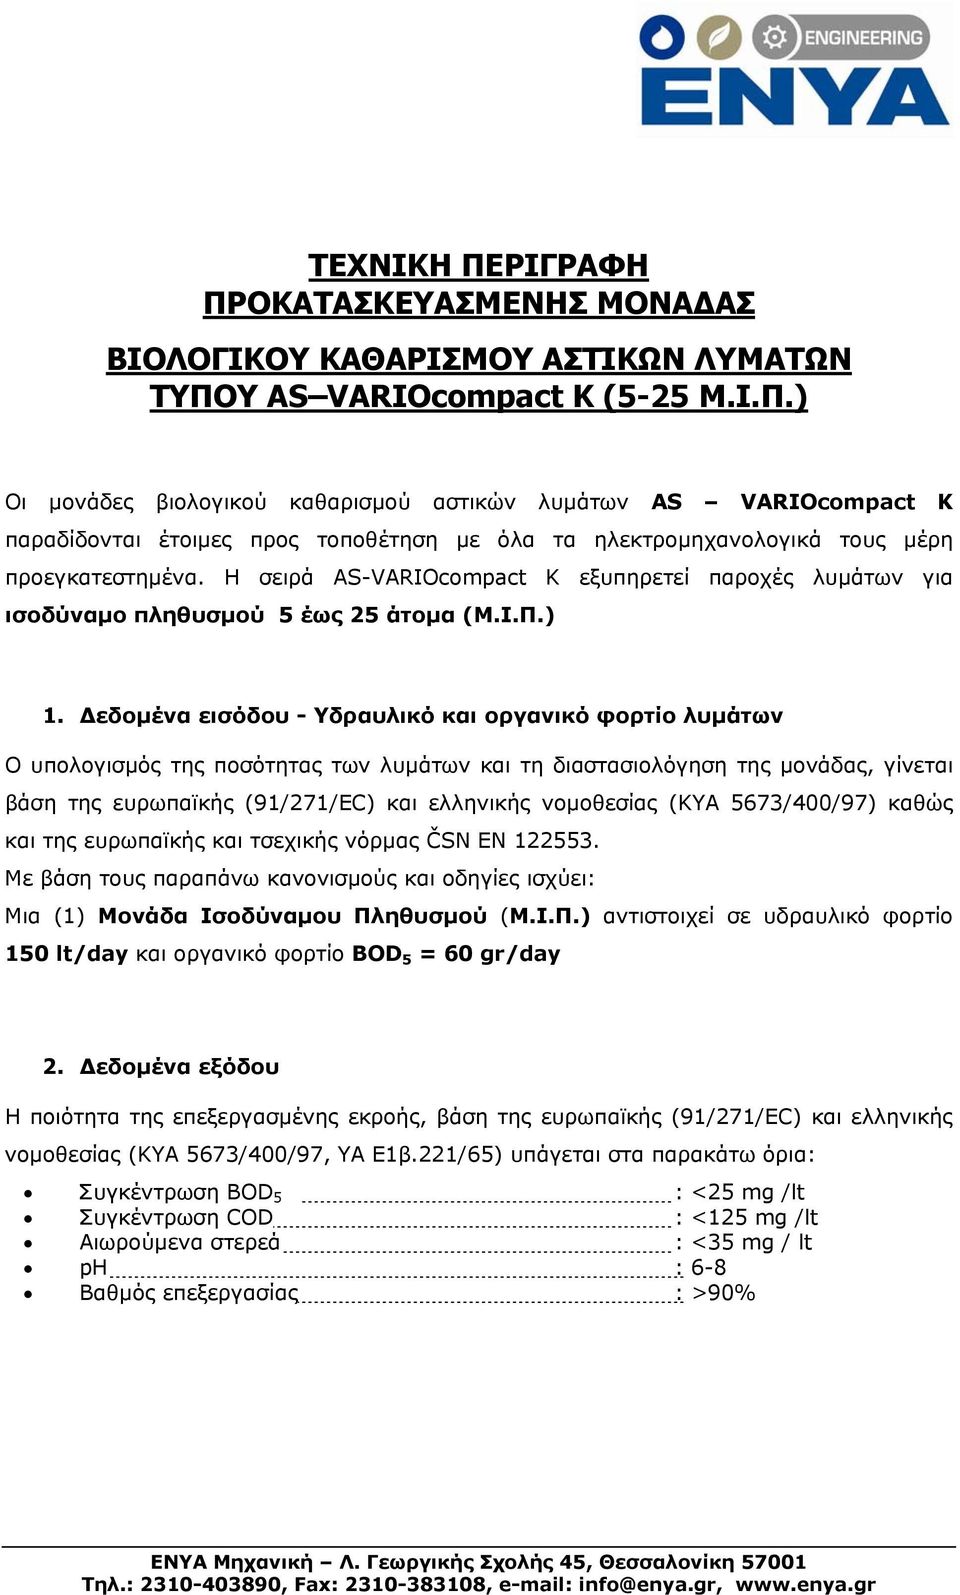 Δεδομένα εισόδου - Υδραυλικό και οργανικό φορτίο λυμάτων Ο υπολογισμός της ποσότητας των λυμάτων και τη διαστασιολόγηση της μονάδας, γίνεται βάση της ευρωπαϊκής (91/271/ΕC) και ελληνικής νομοθεσίας